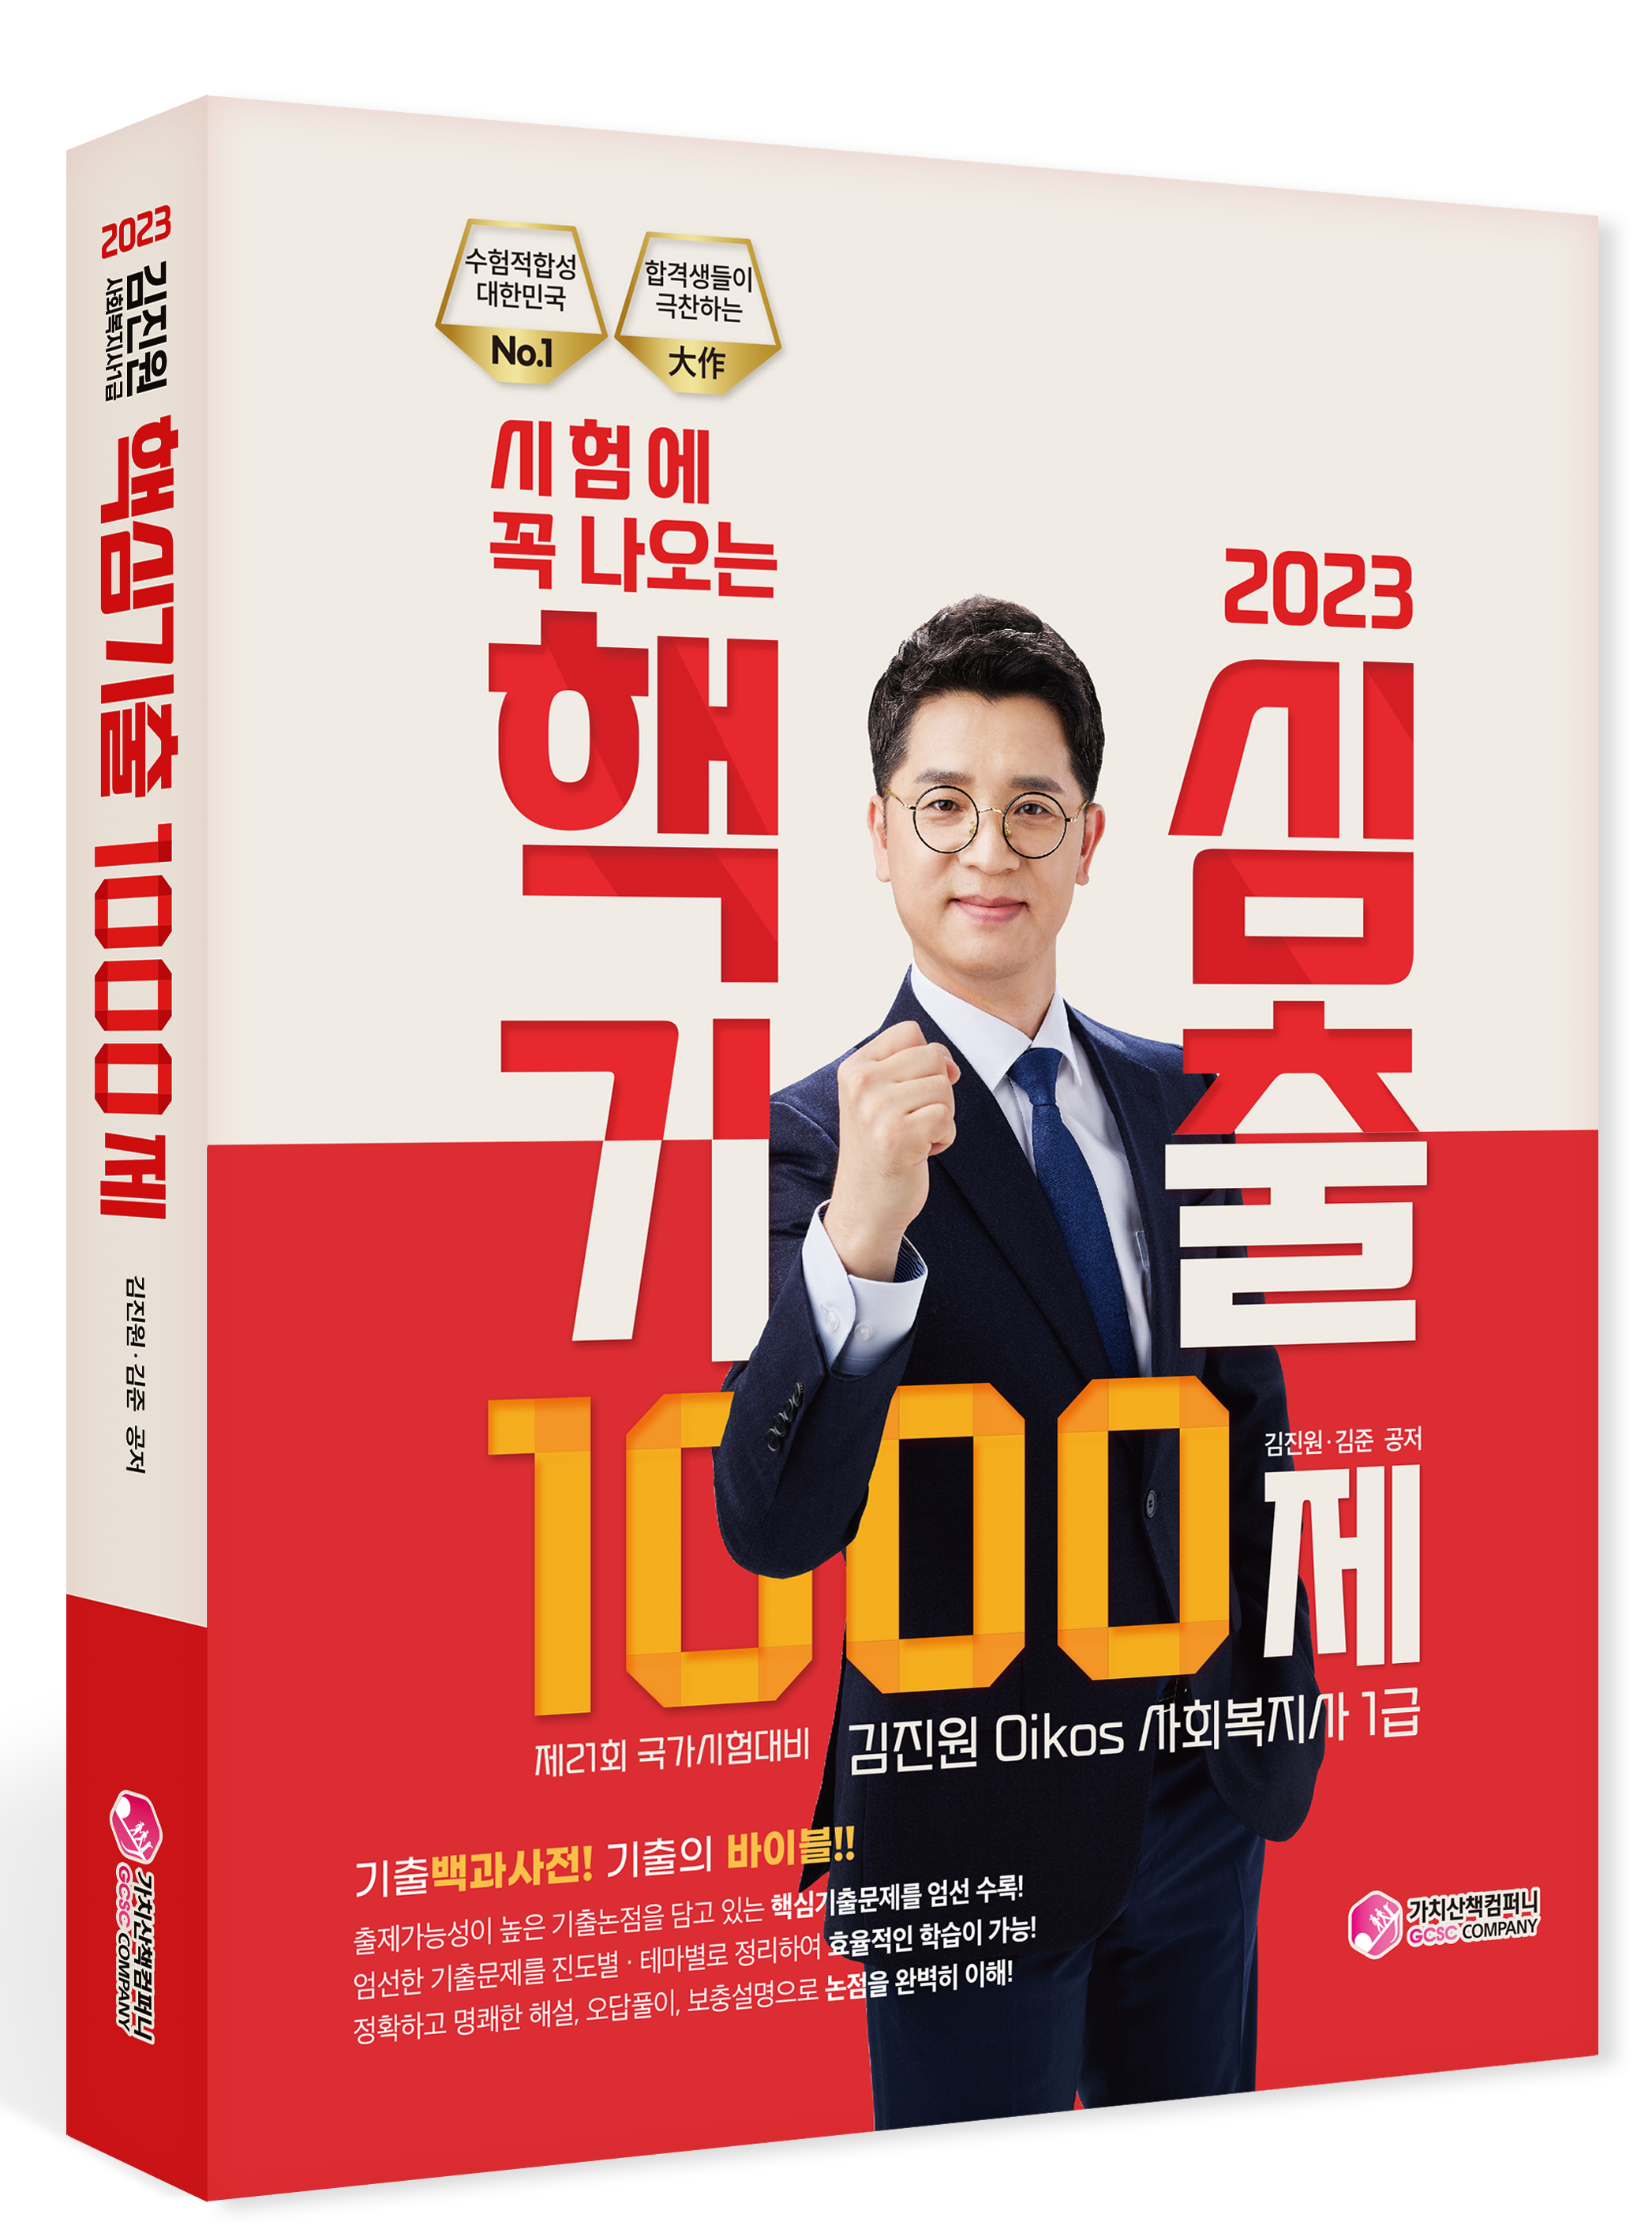 2023 김진원 사회복지사 1급 시험에 꼭나오는 핵심기출 1000제 책 표지